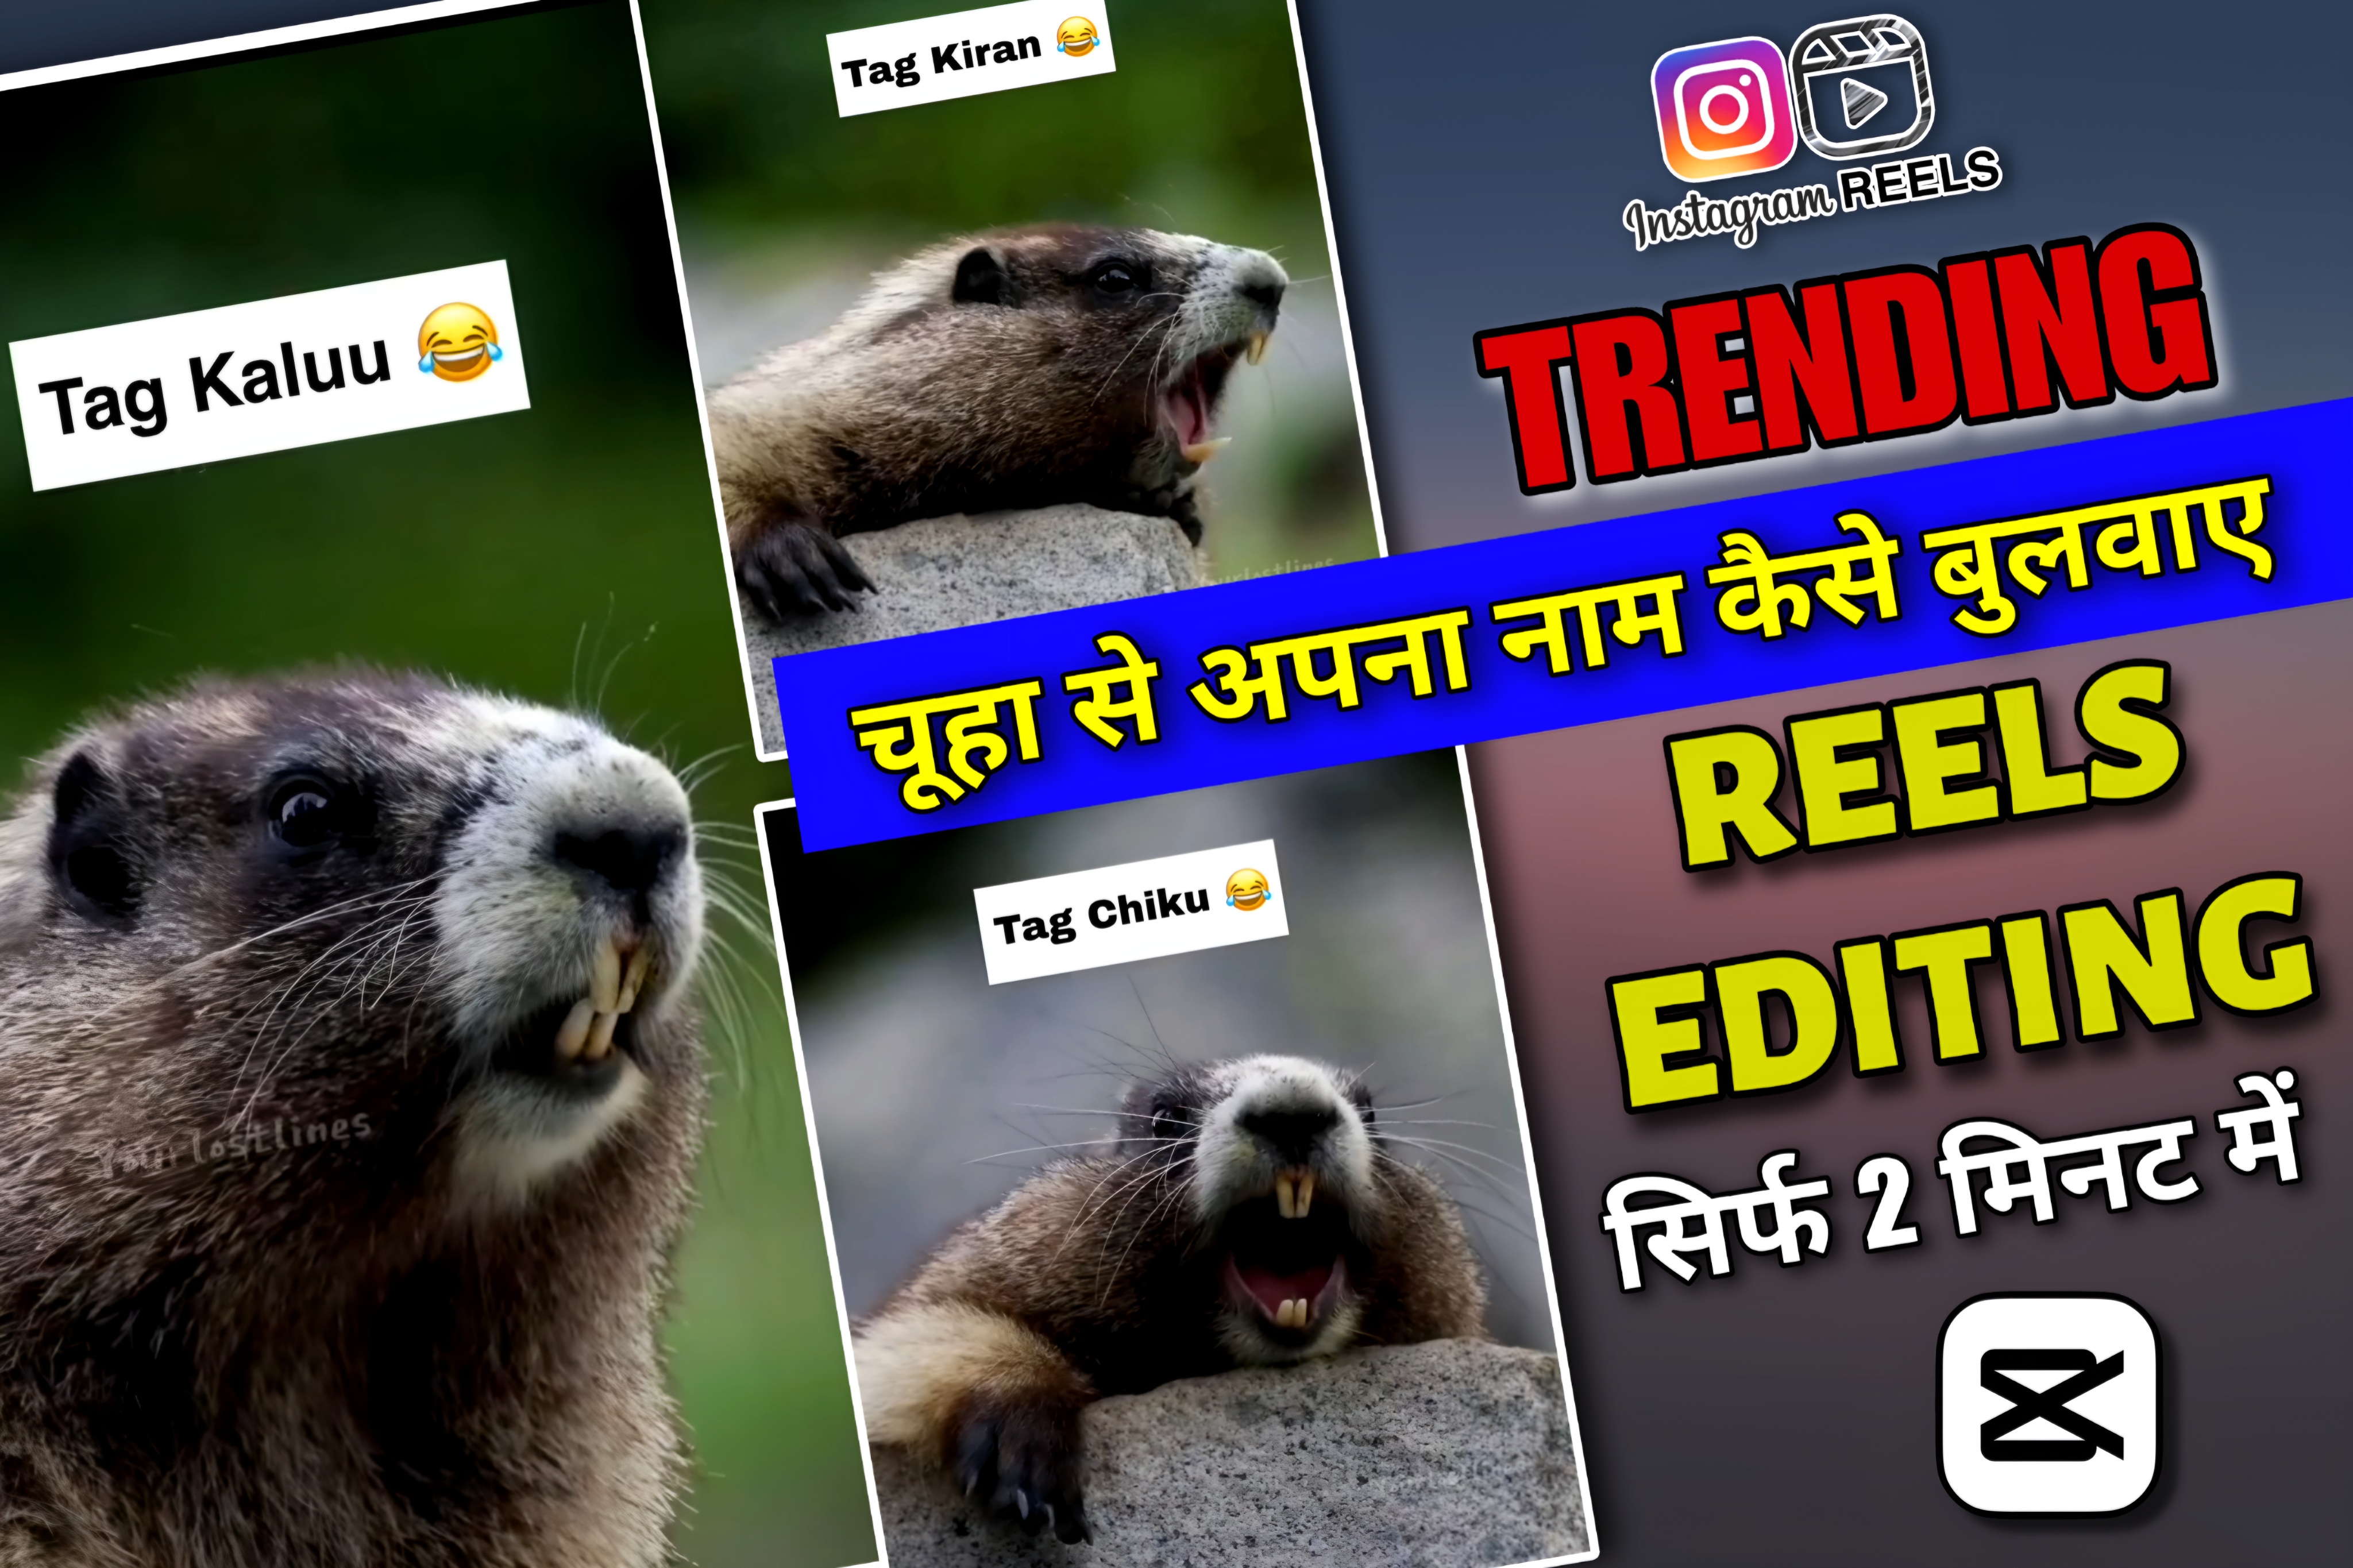 Viral Rat Saying Name Reels Editing || Instagram Trending Reels Editing || New Capcut Template